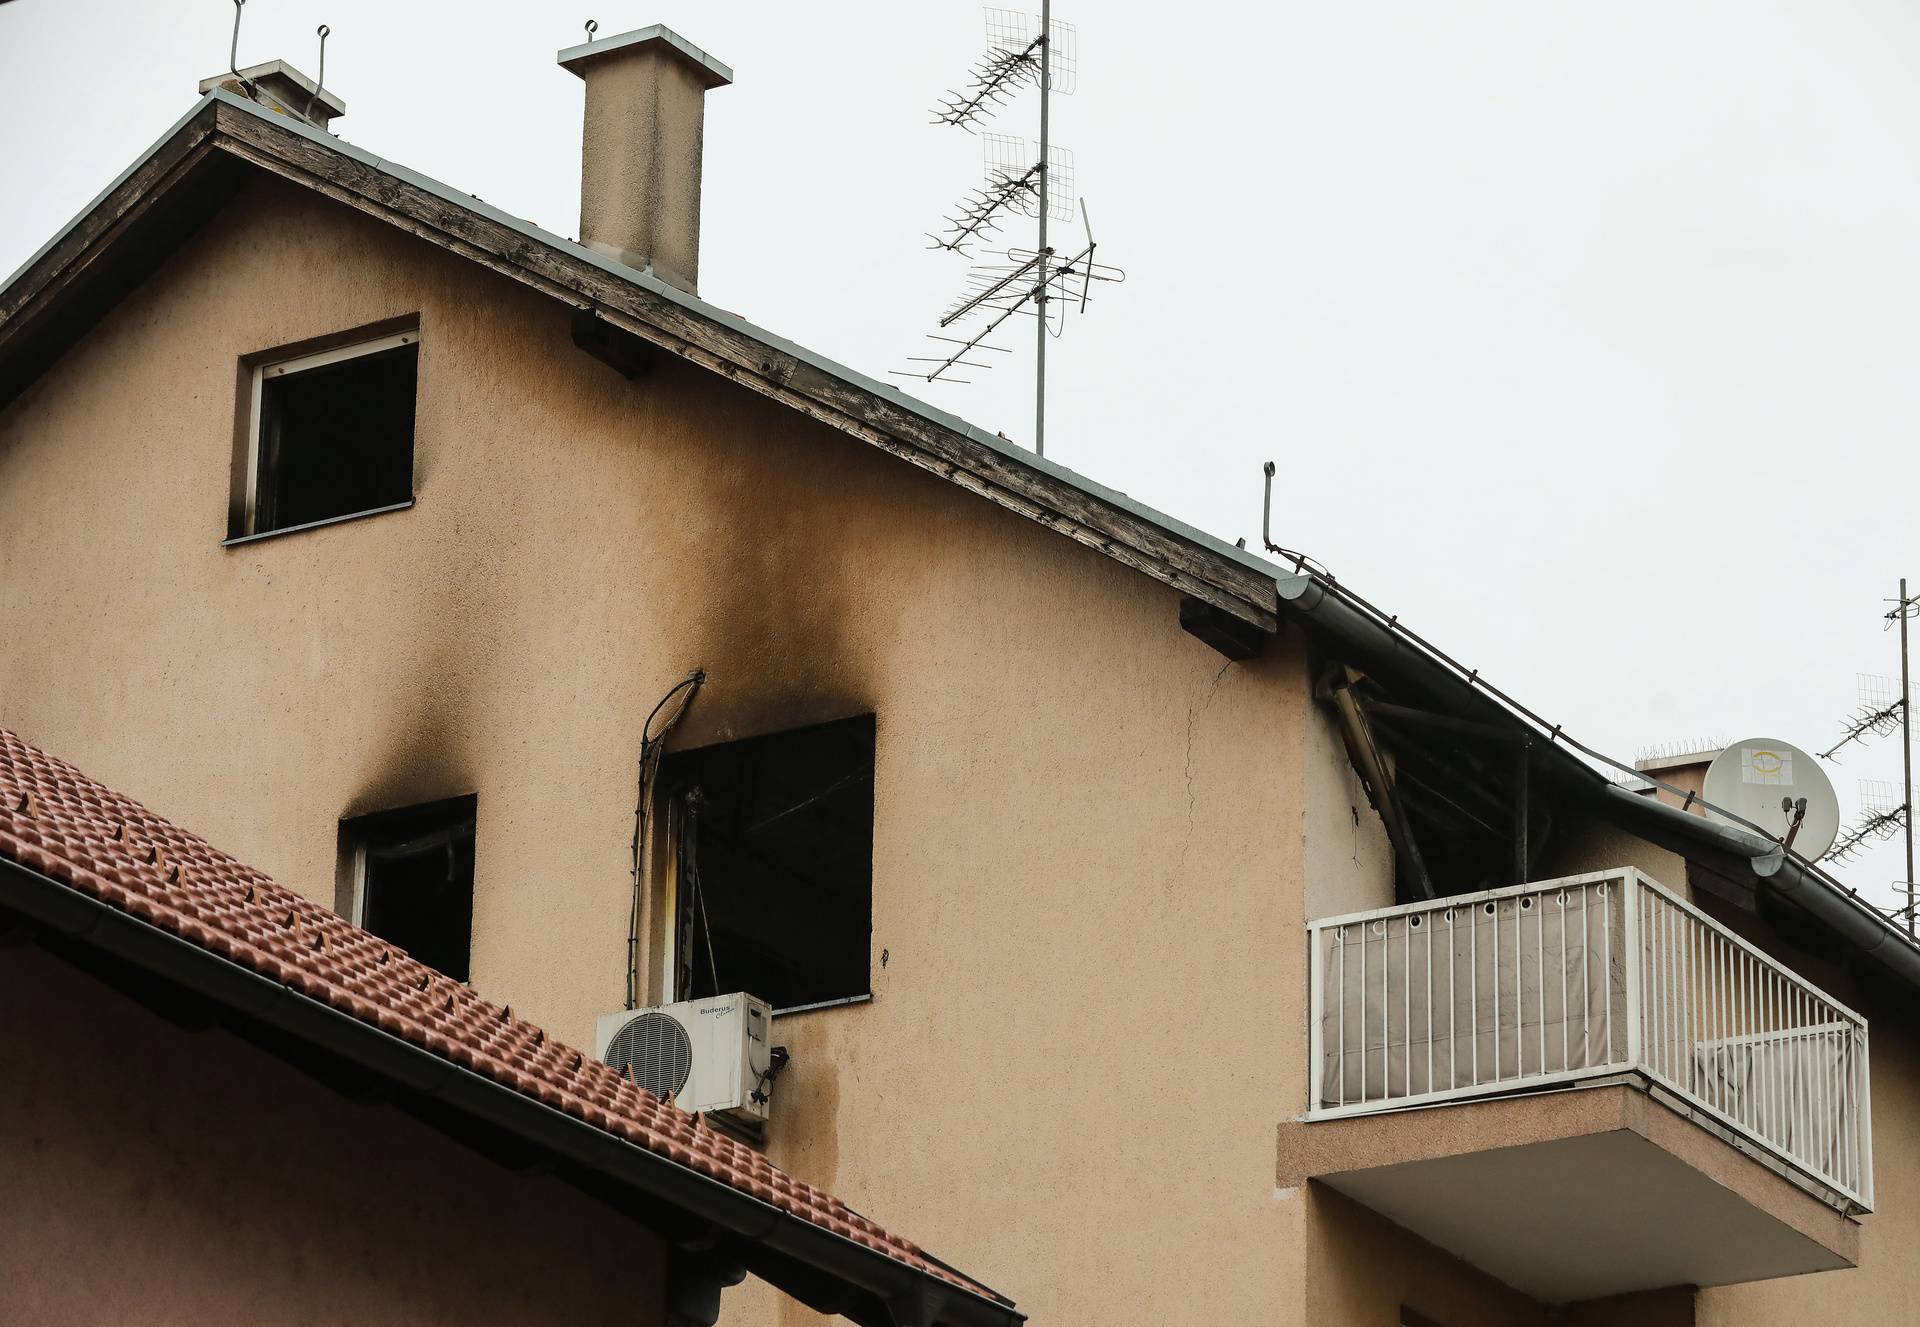 Na Božić gotovo cijeli izgorio stan u Zagrebu, par istrčao van, od šoka nisu mogli ni govoriti